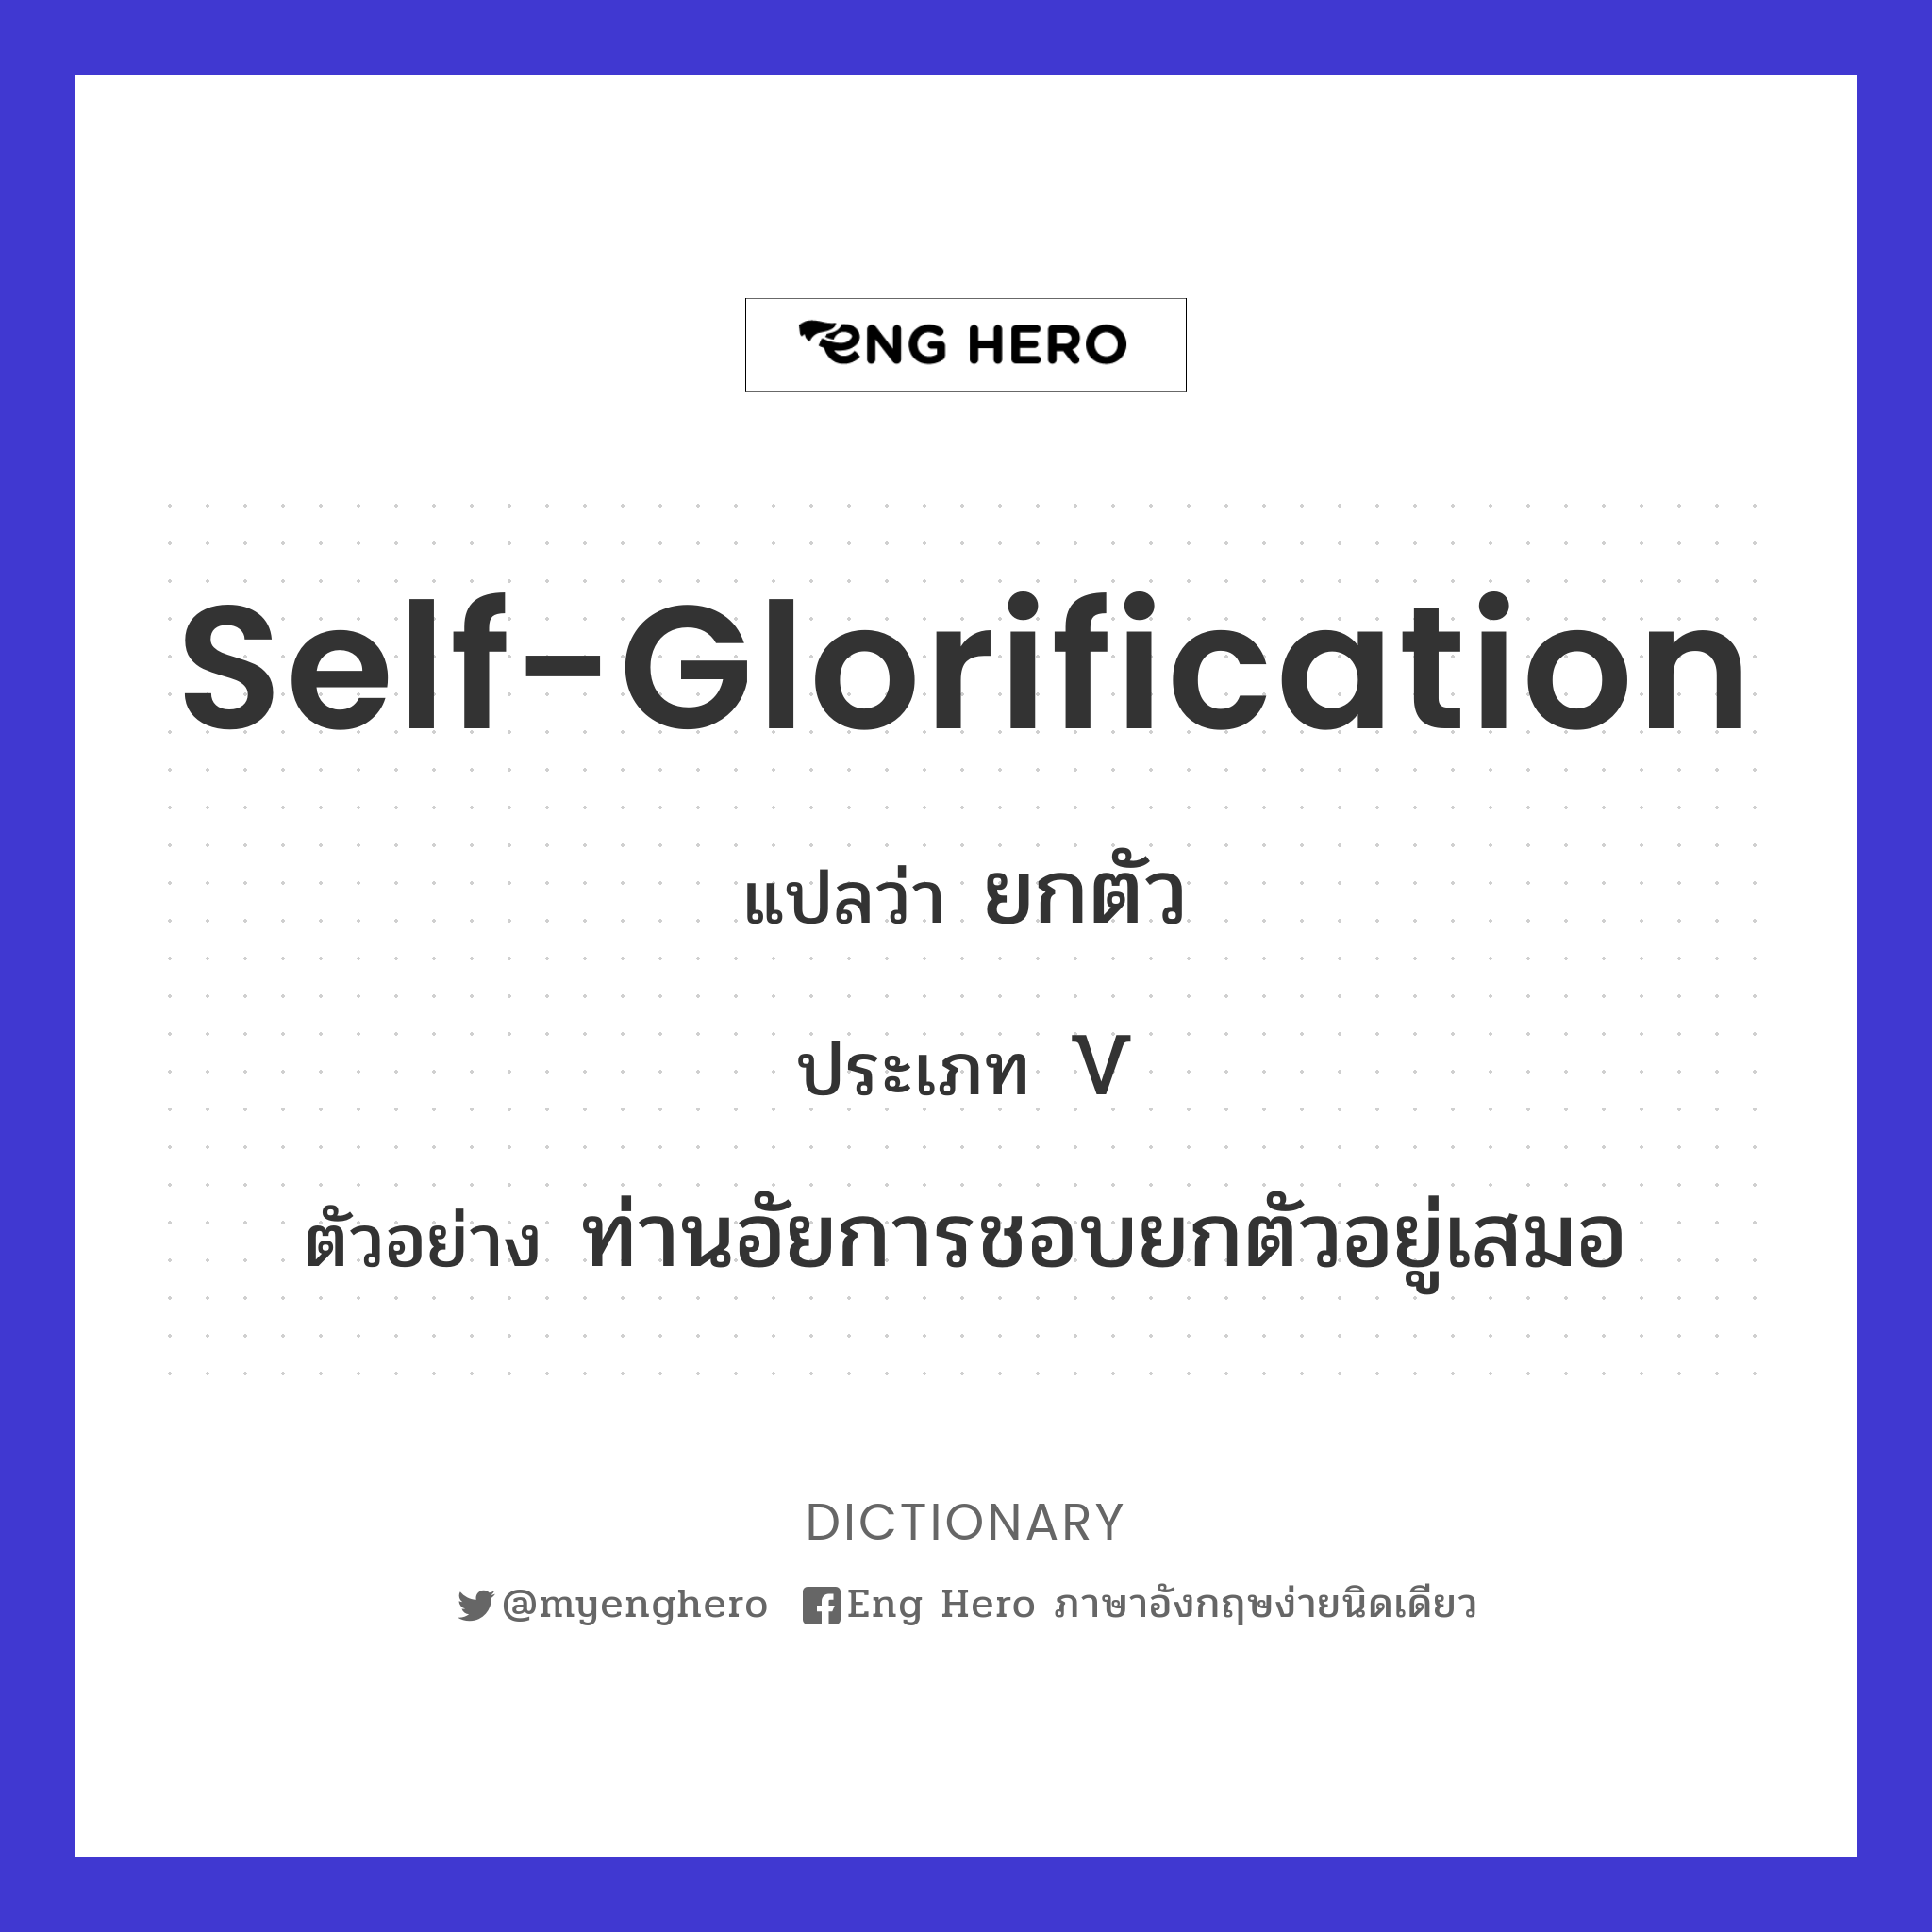 self-glorification